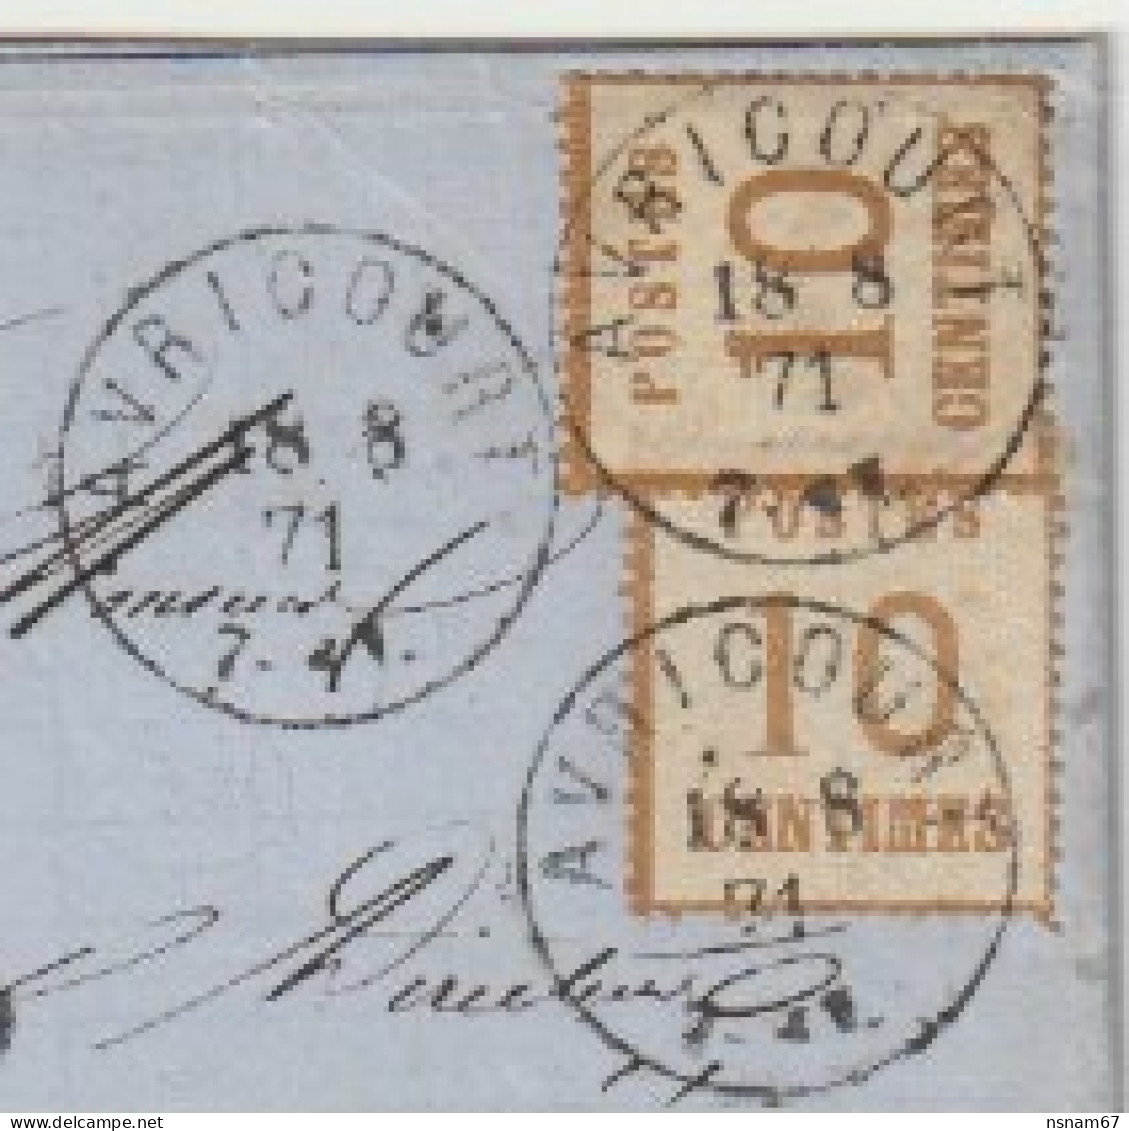 1302p - AVRICOURT  Pour EPINAL Vosges - 18 Aout 71 - 2 X 10 Ctes Alsace + Taxe 2 Décimes - - War 1870